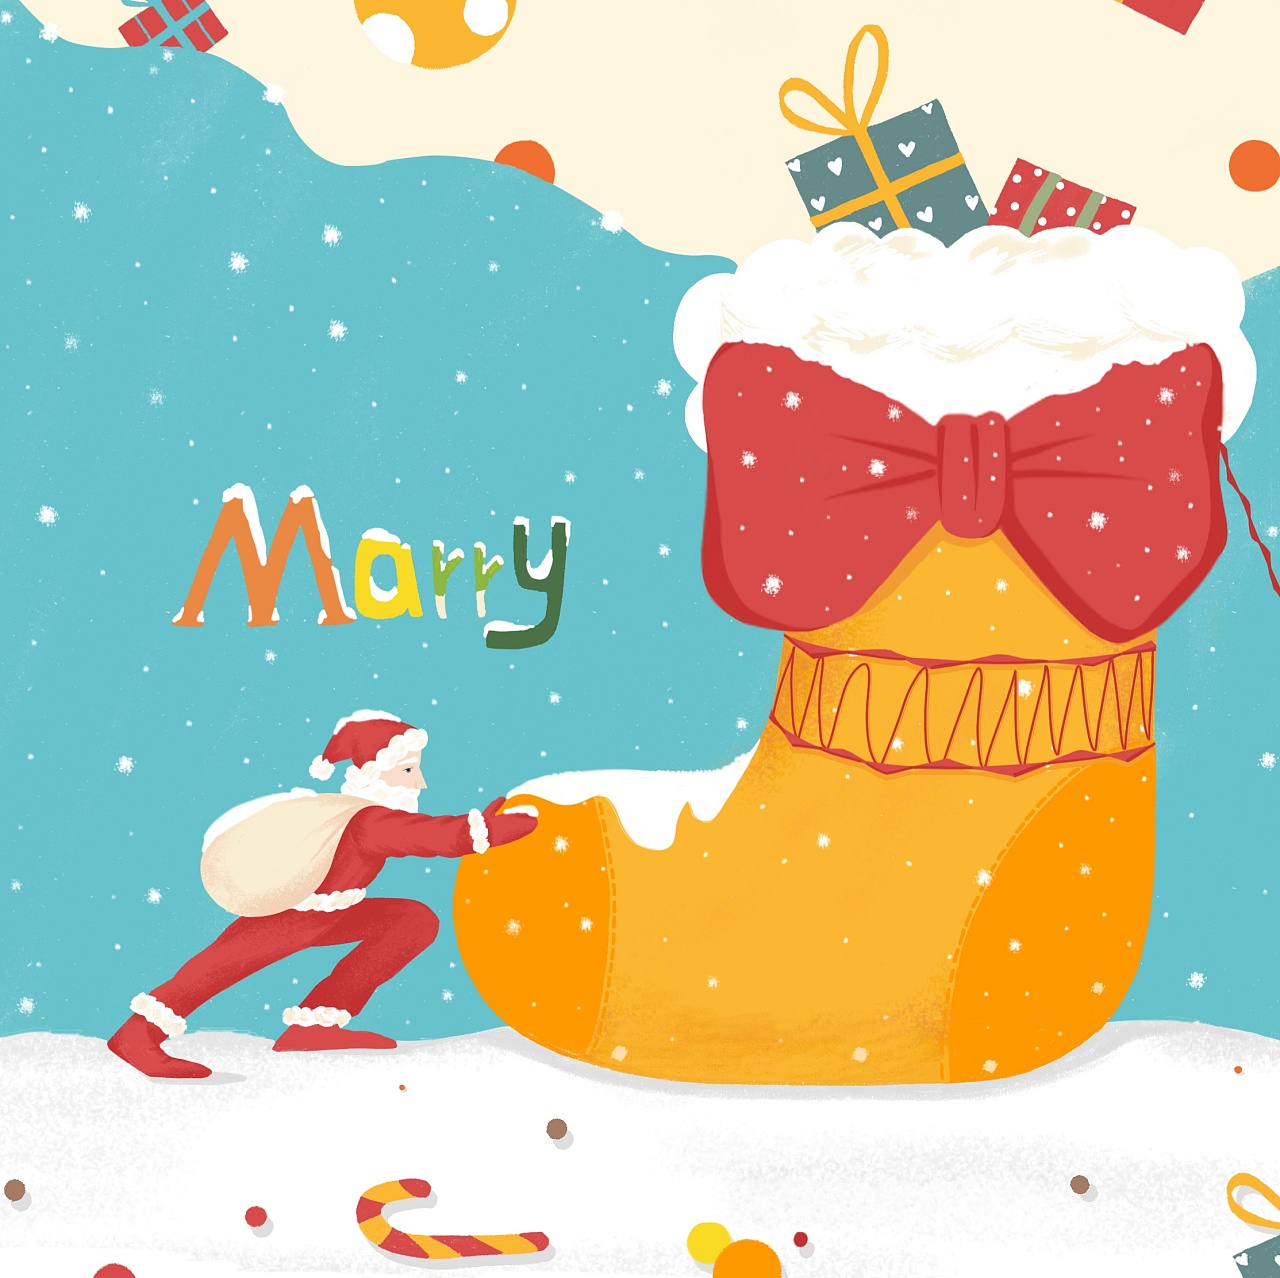 圣诞节礼物盒插画 - 模板 - Canva可画